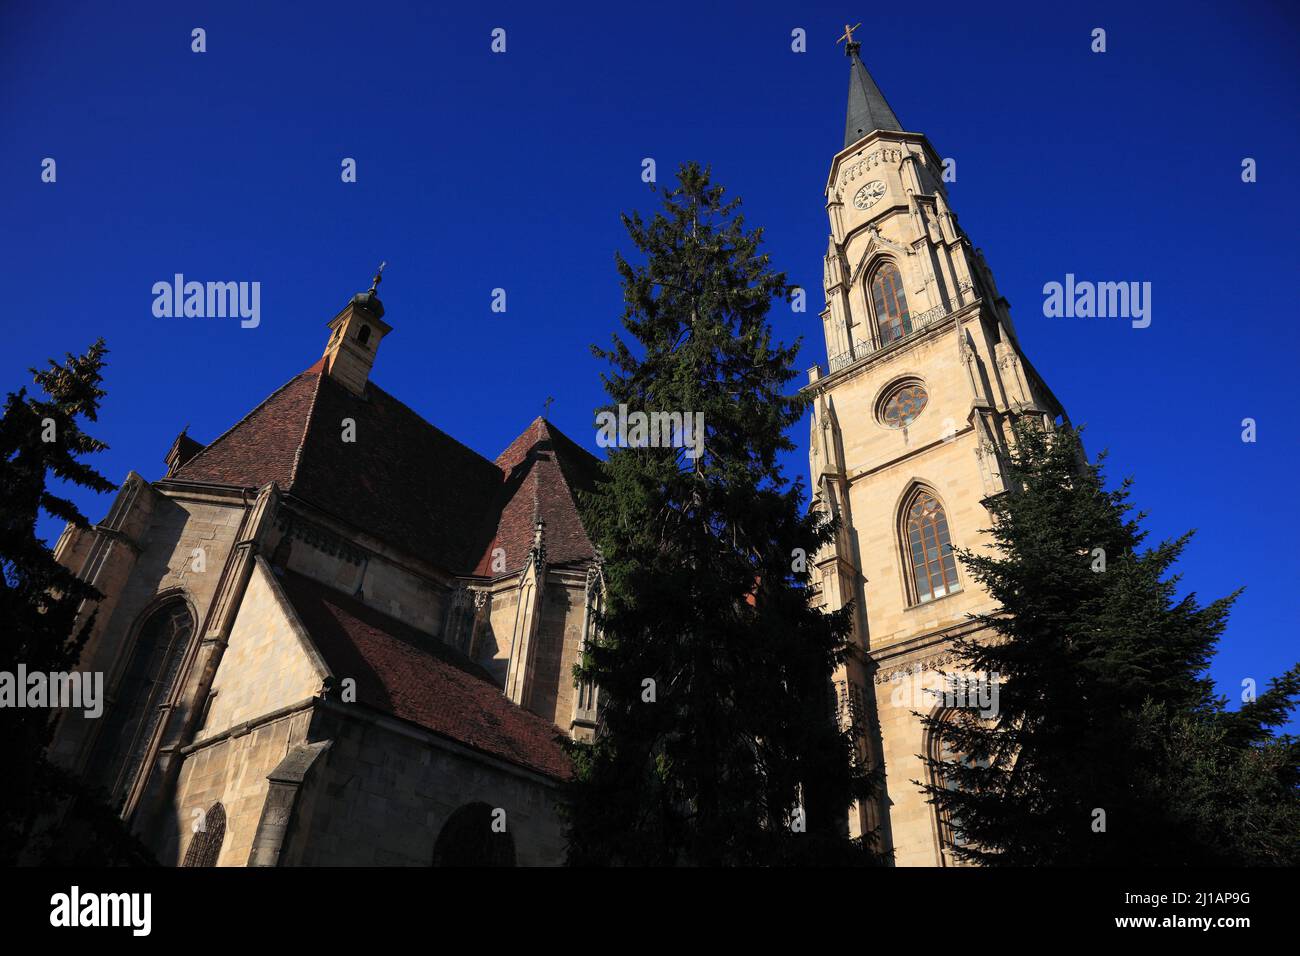 Die Klausenburger Michaelskirche in Cluj-Napoca, deutsch Klausenburg, ist das bedeutendste Beispiel einer gotischen Hallenkirche in Siebenbürgen, Rumä Banque D'Images